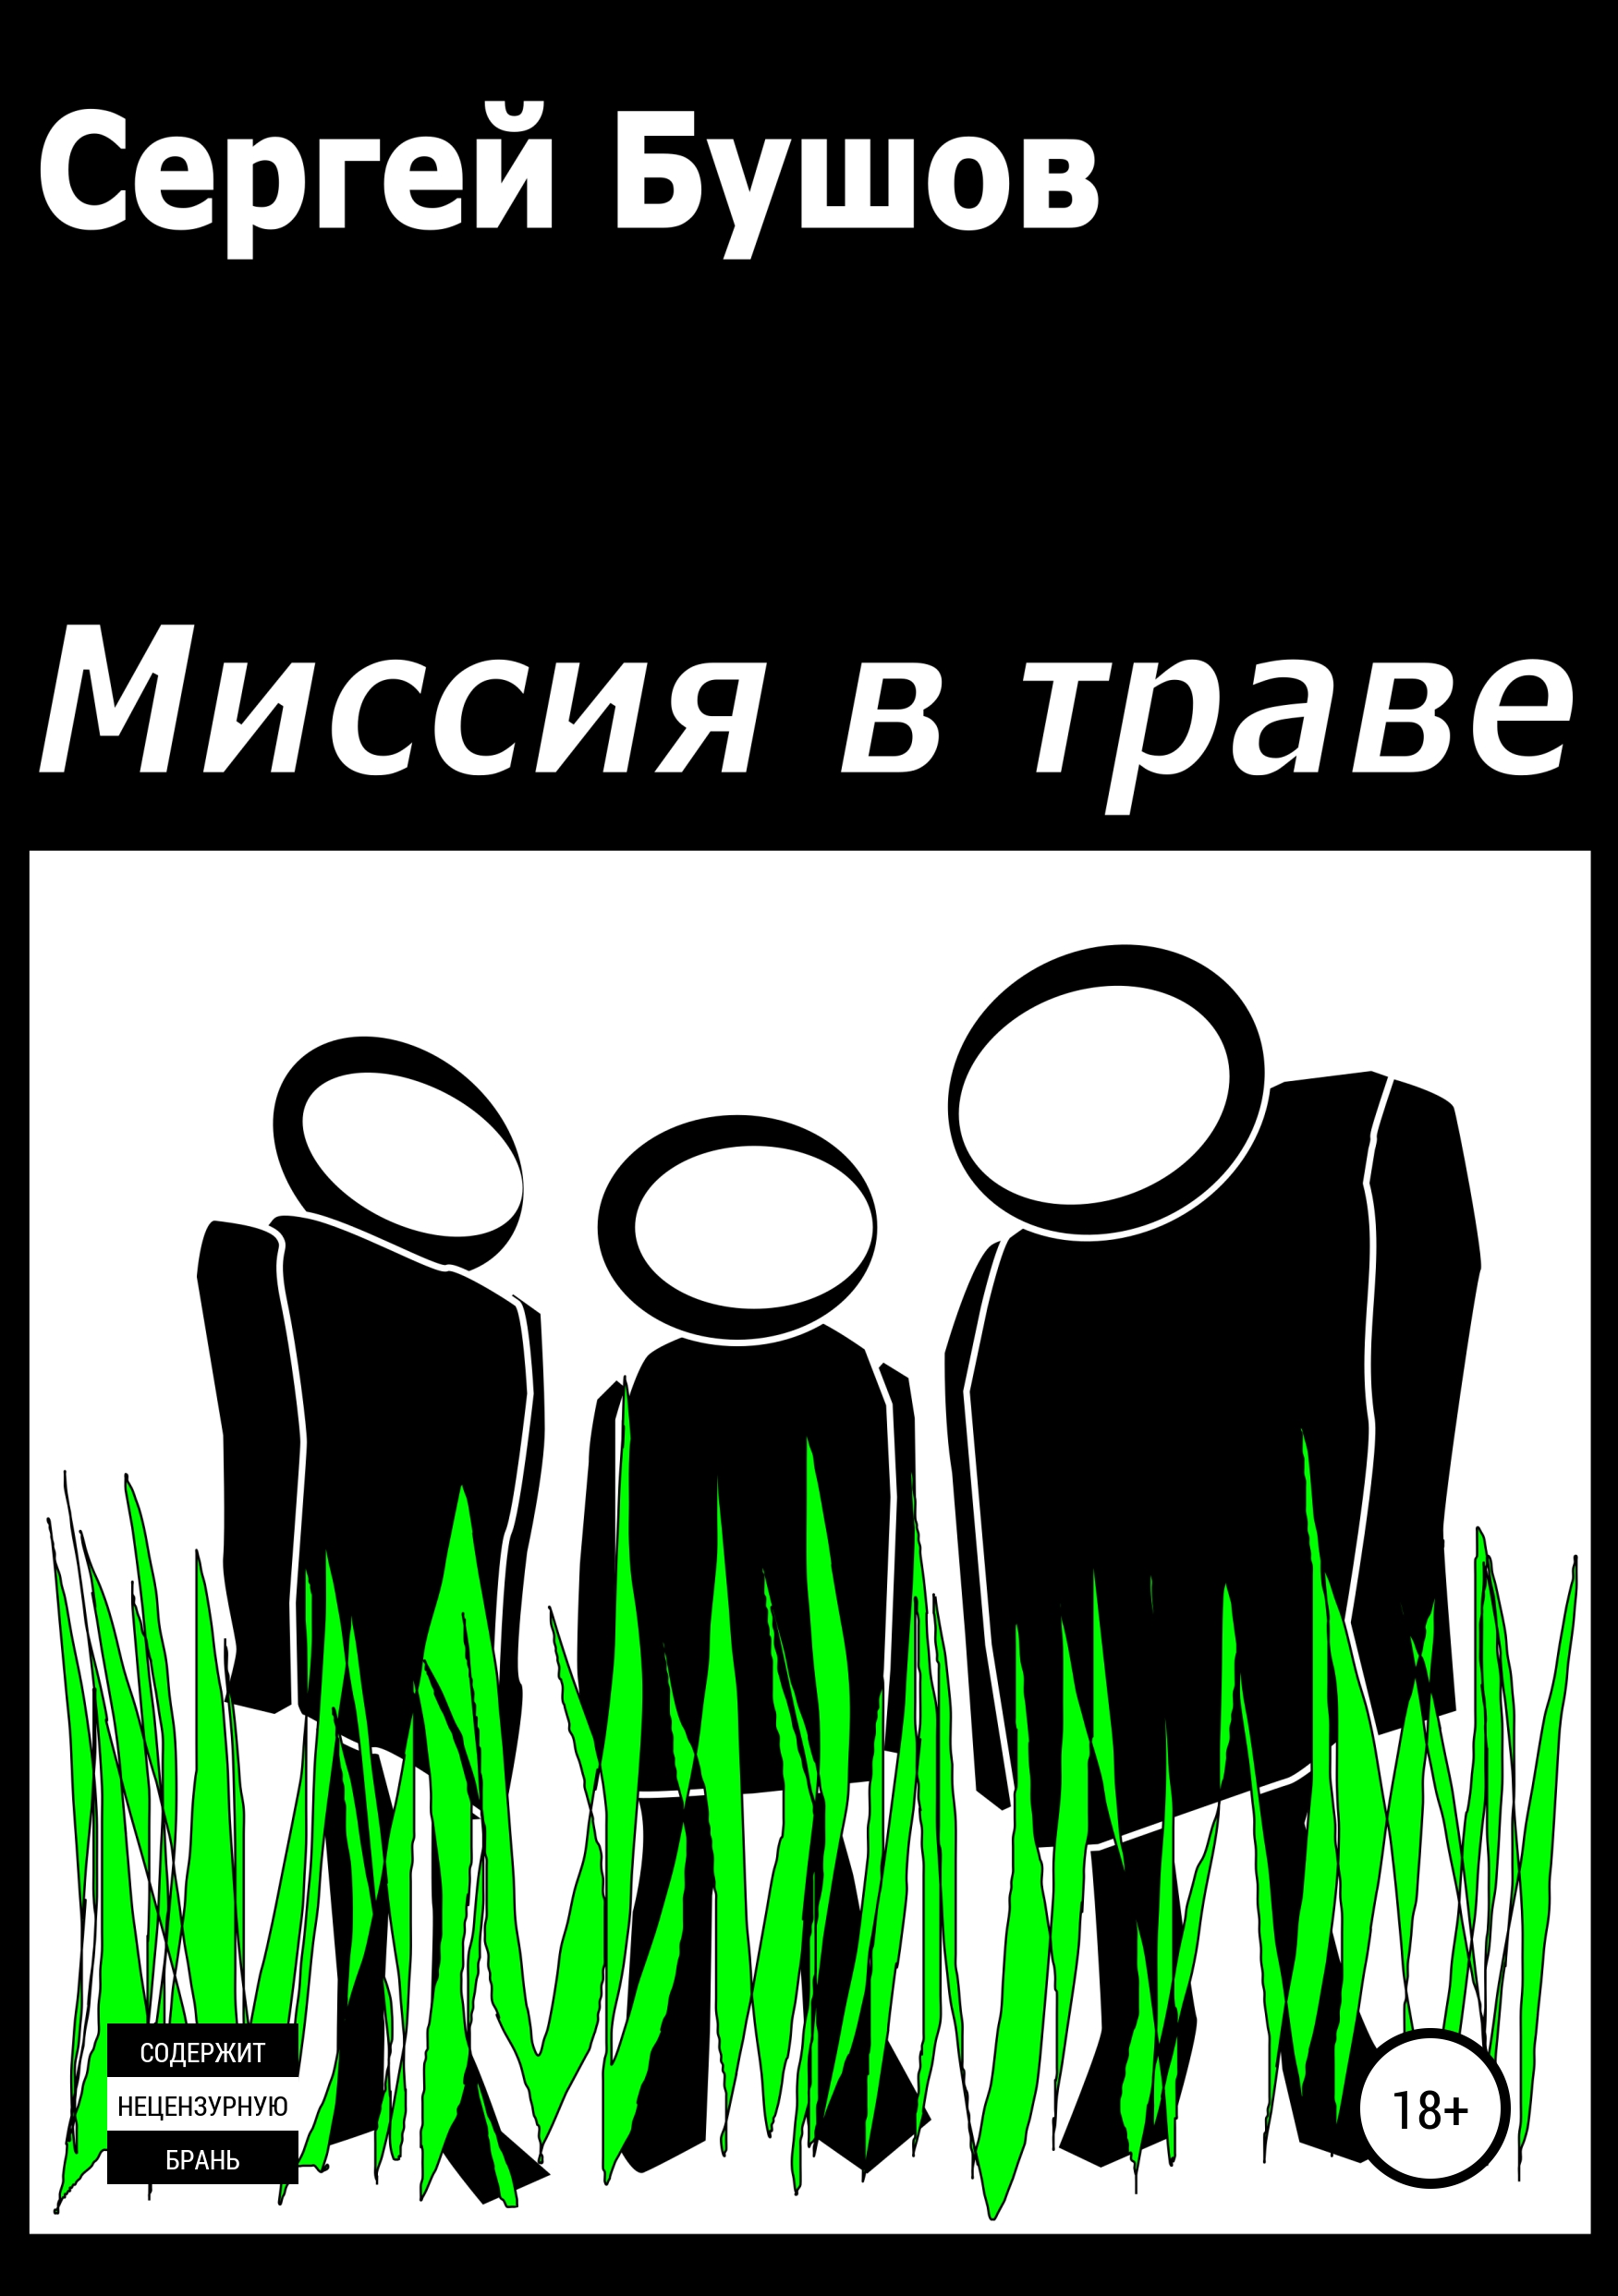 Сергей Бушов Миссия в траве